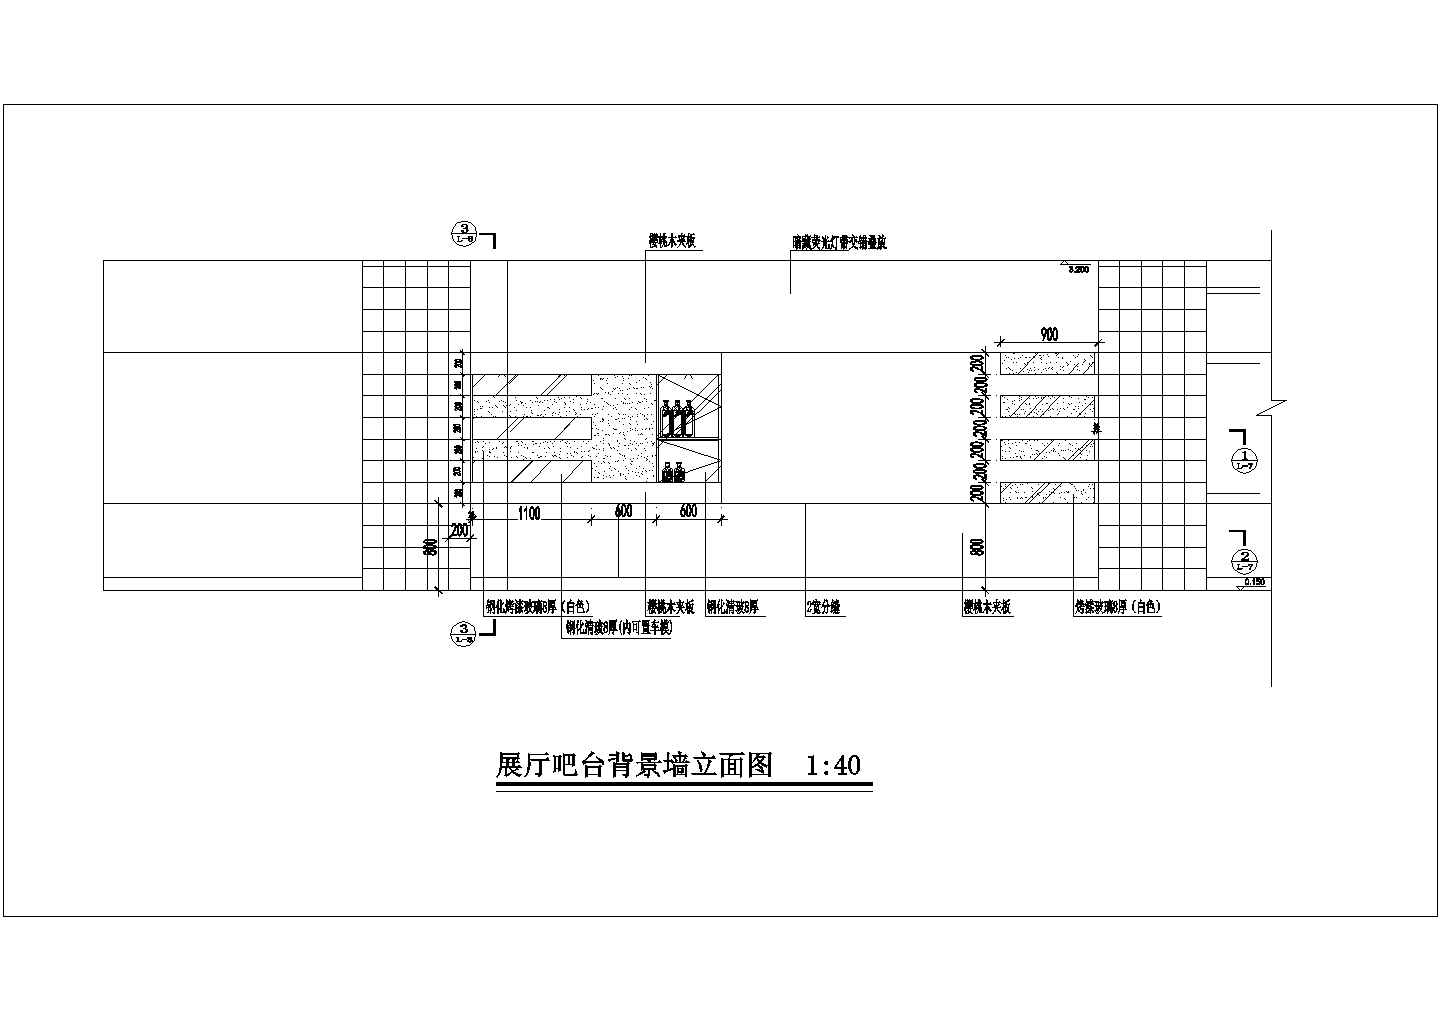 北京某机动车4S店建筑装饰设计施工图